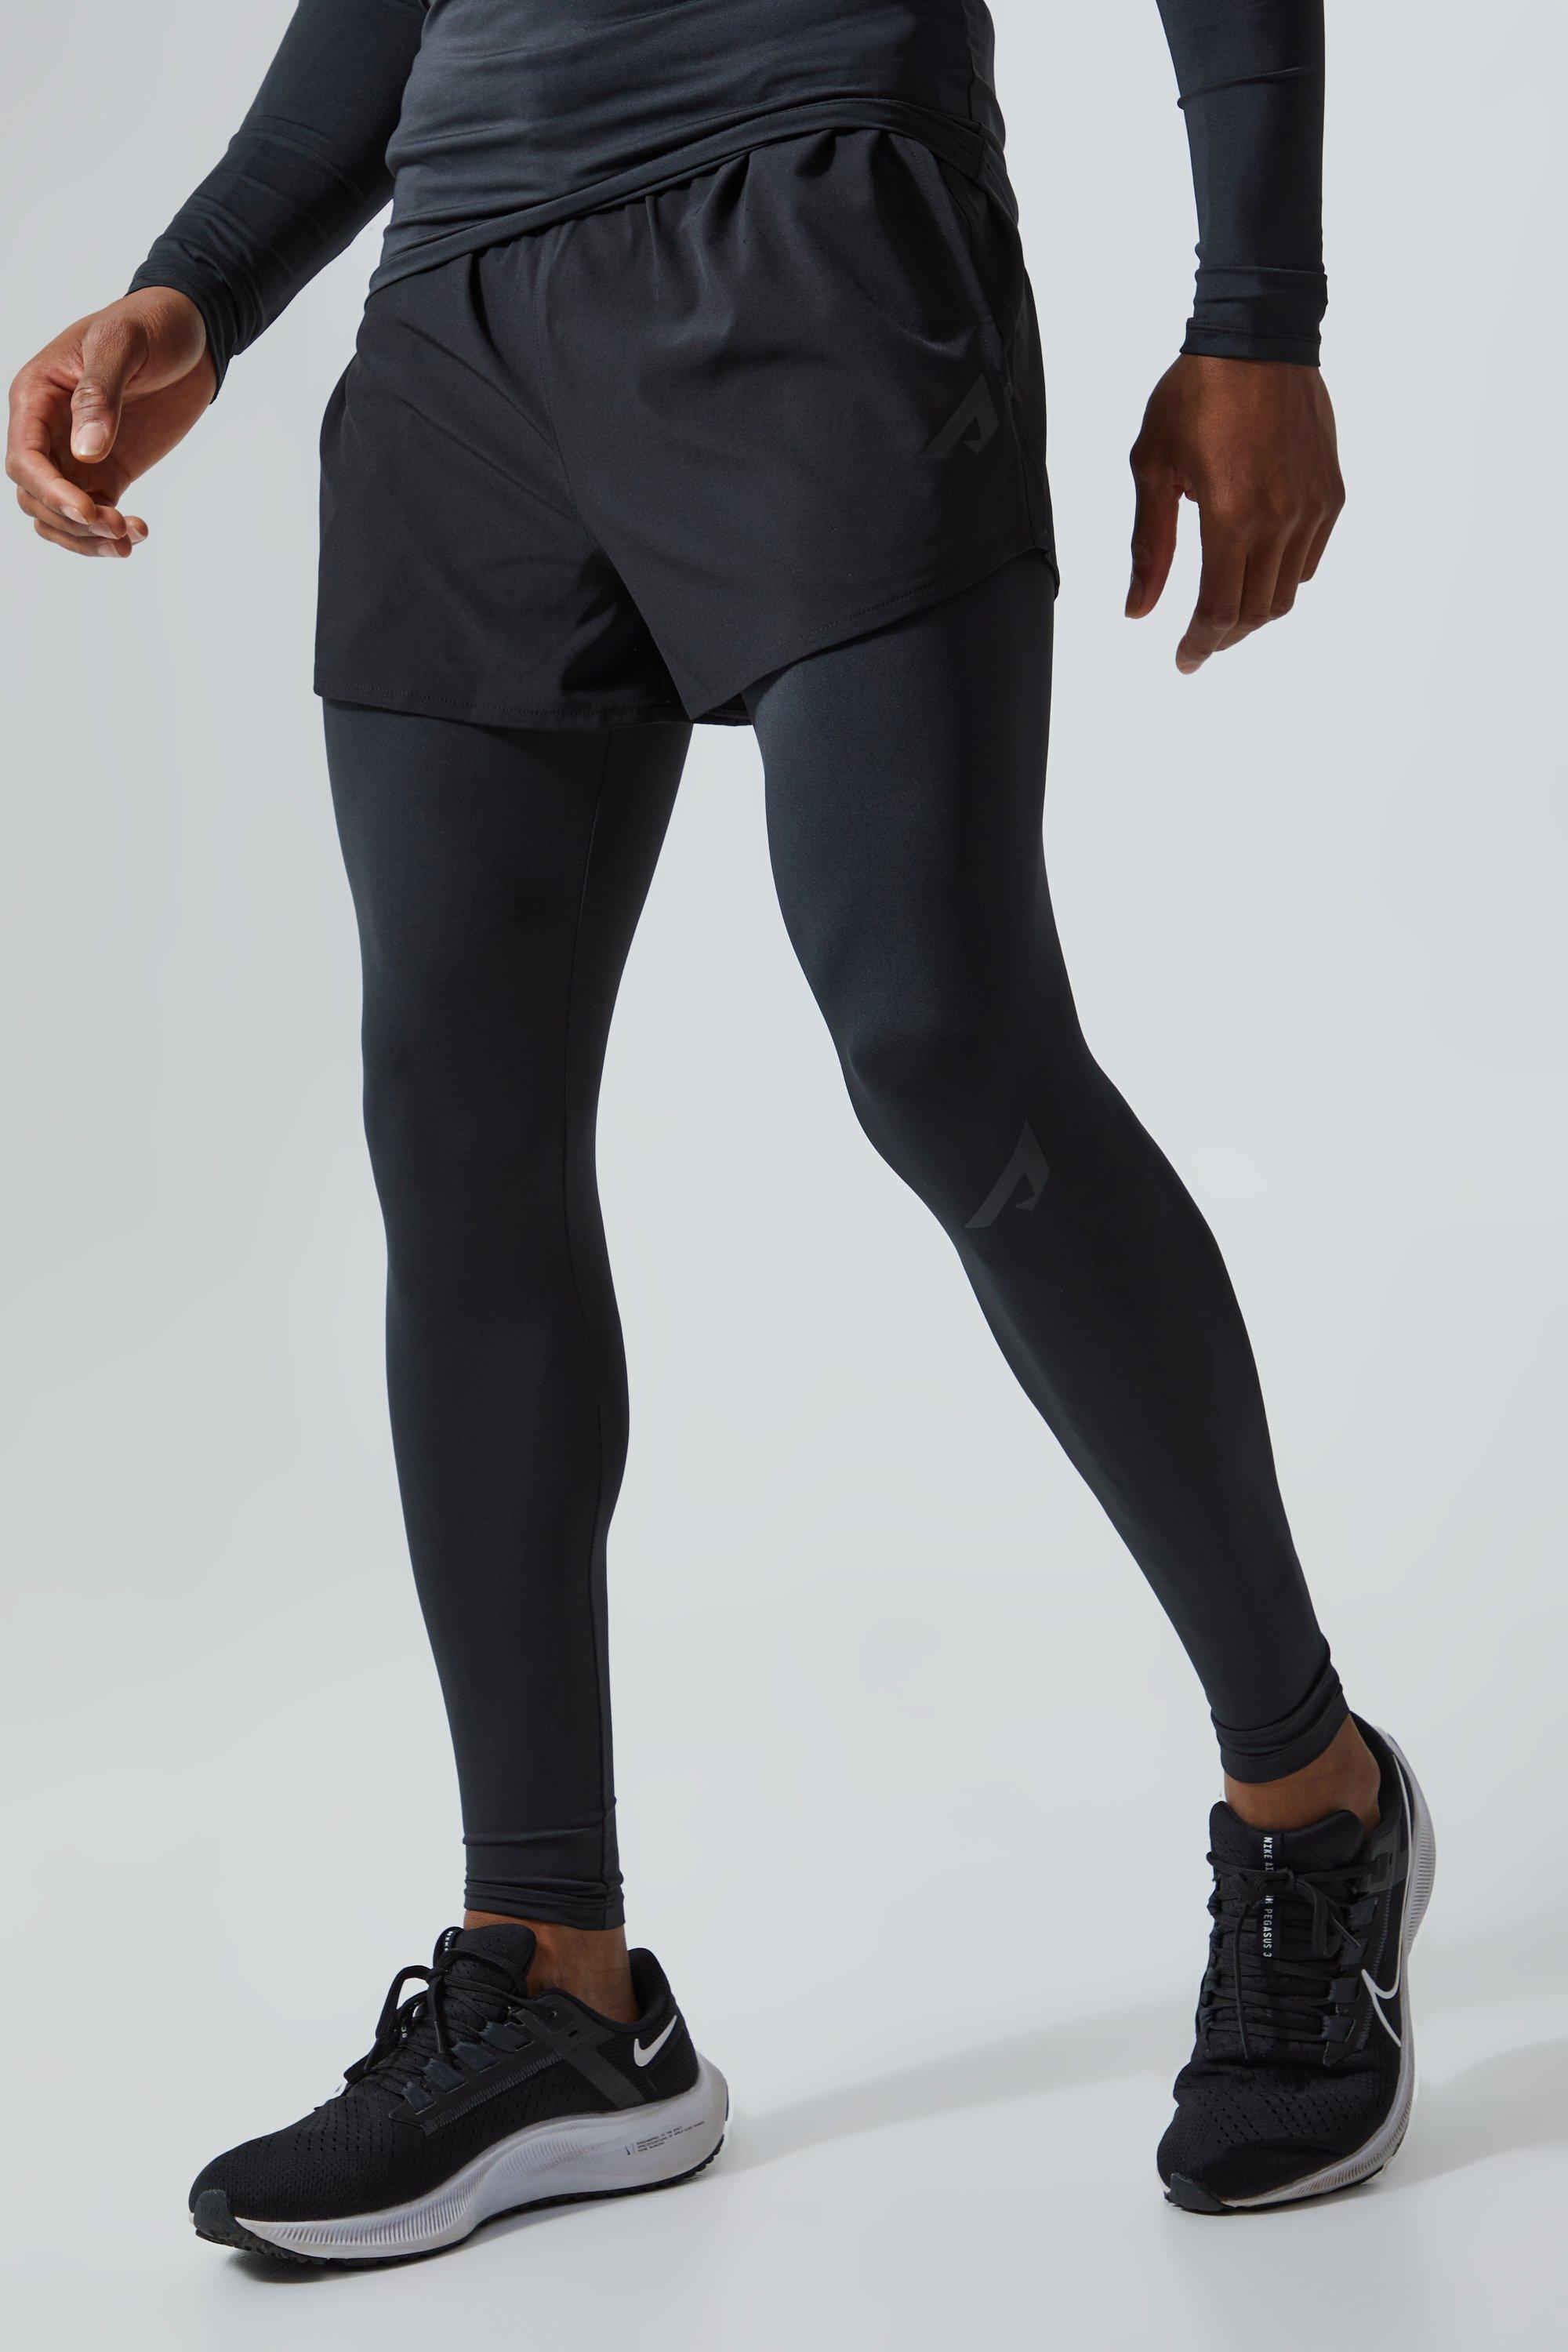 legging de sport sans coutures homme - noir - xs, noir